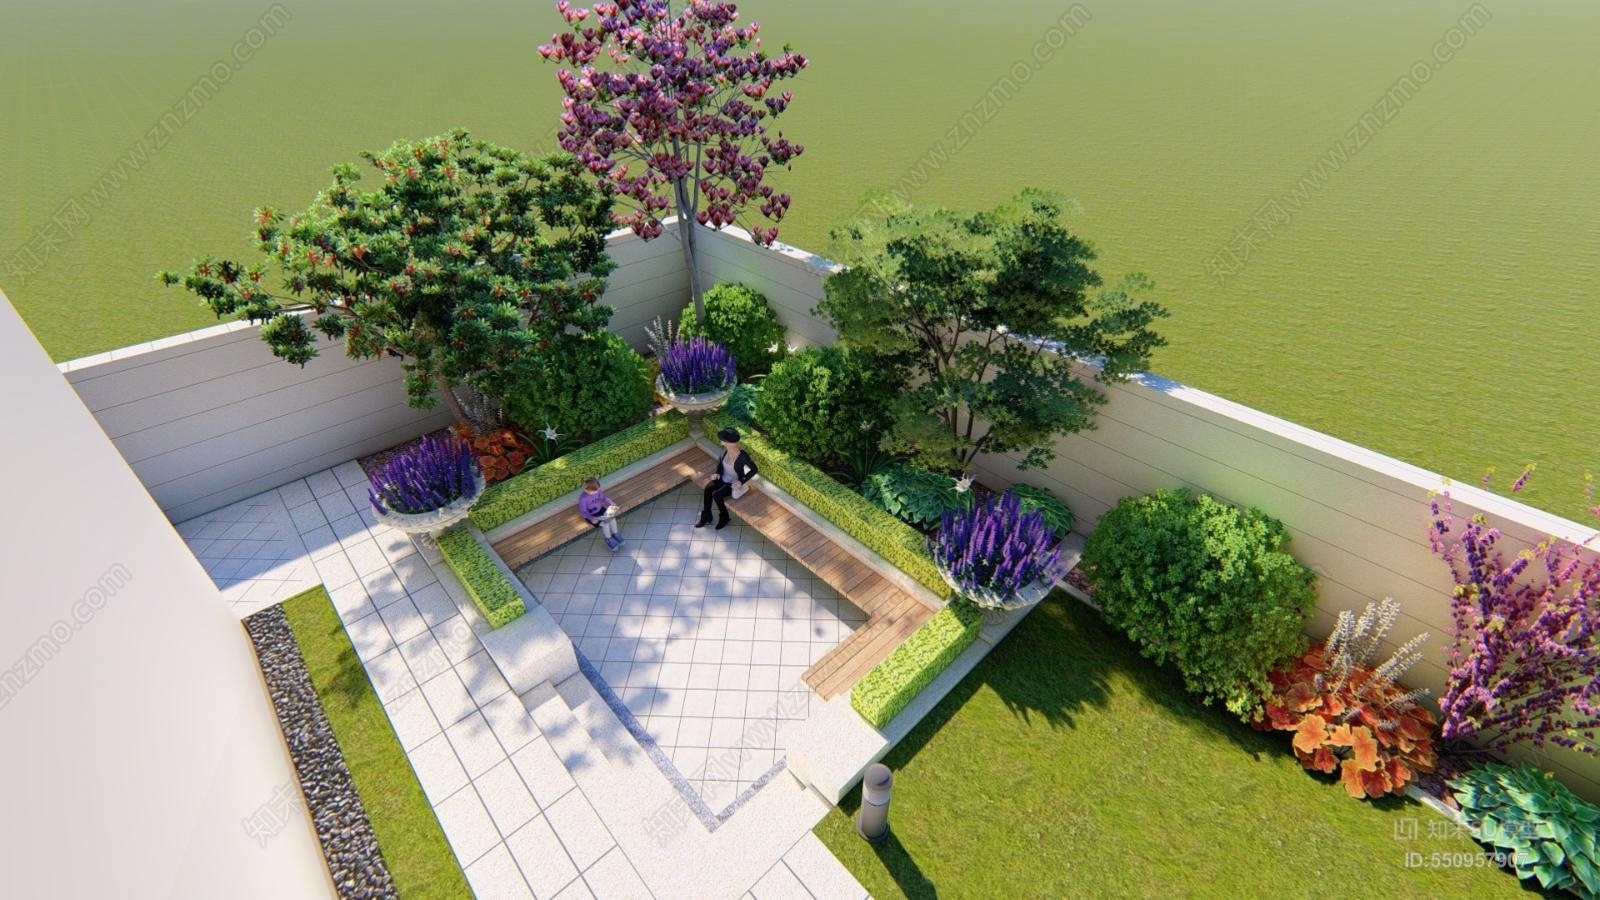 欧式风格别墅庭院园林景观设计 花园方案 平面布局 水景墙 建筑外观su